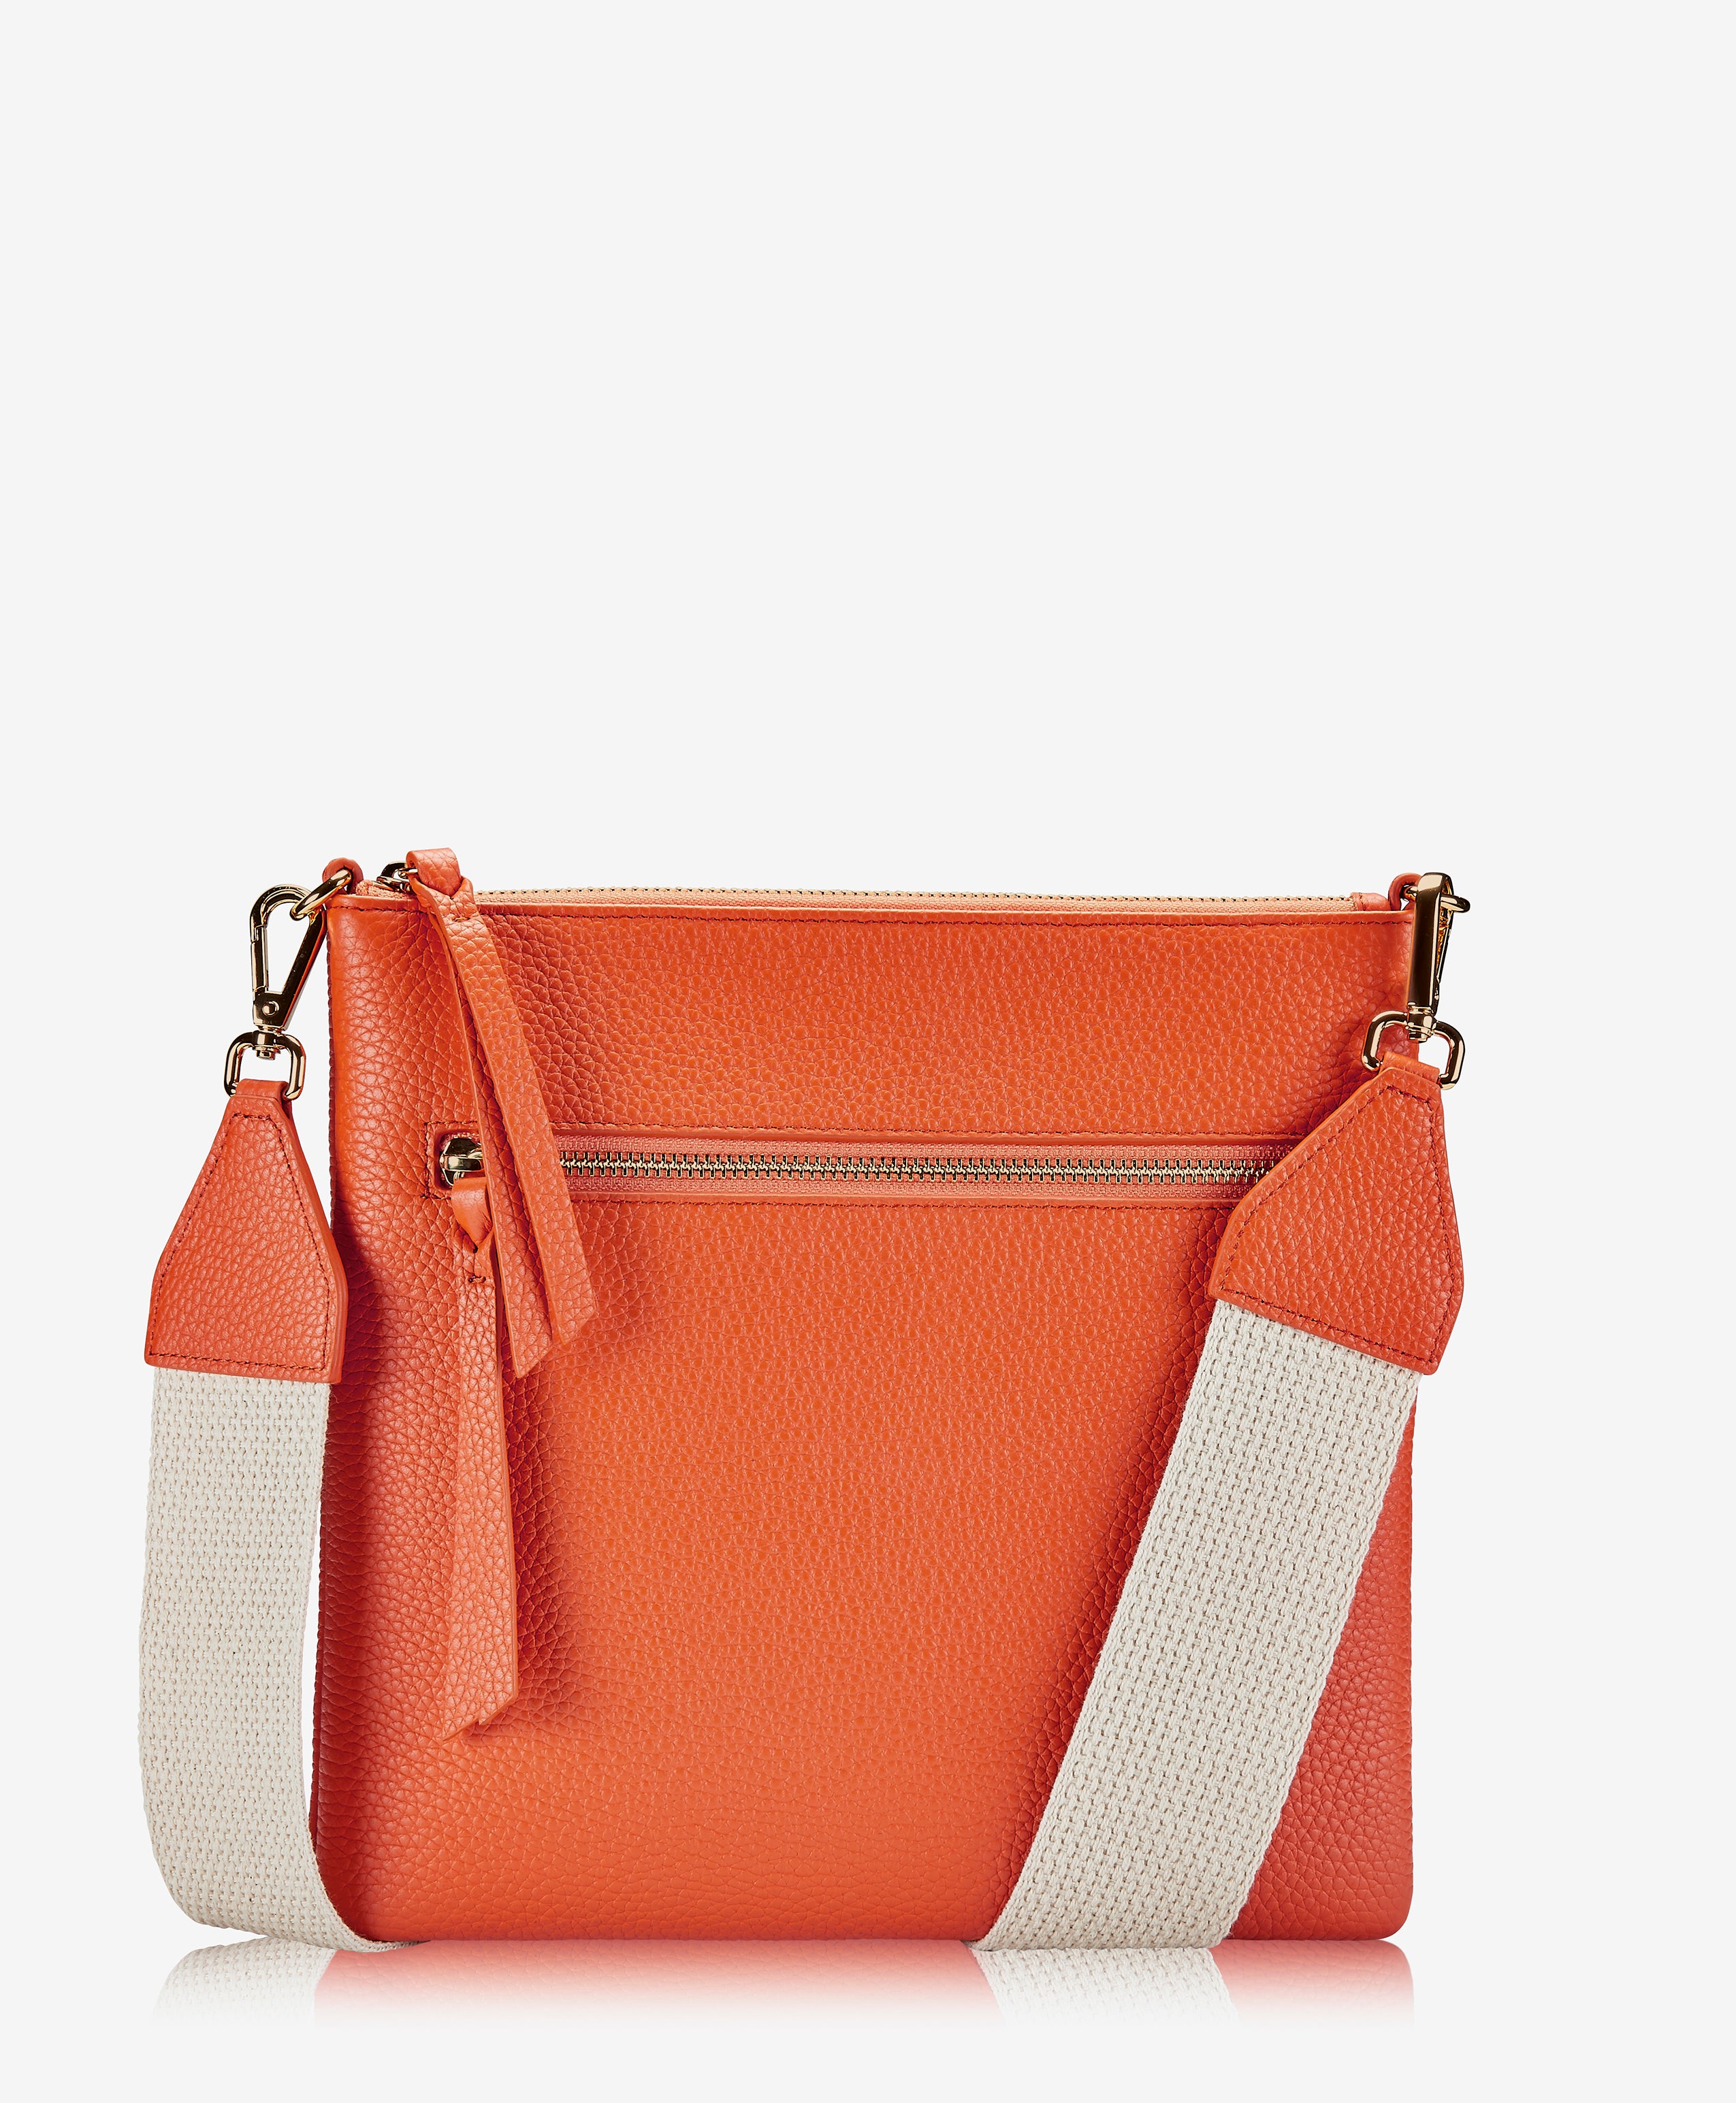 GiGi New York Kit Messenger Bag Orange Pebble Grain Leather